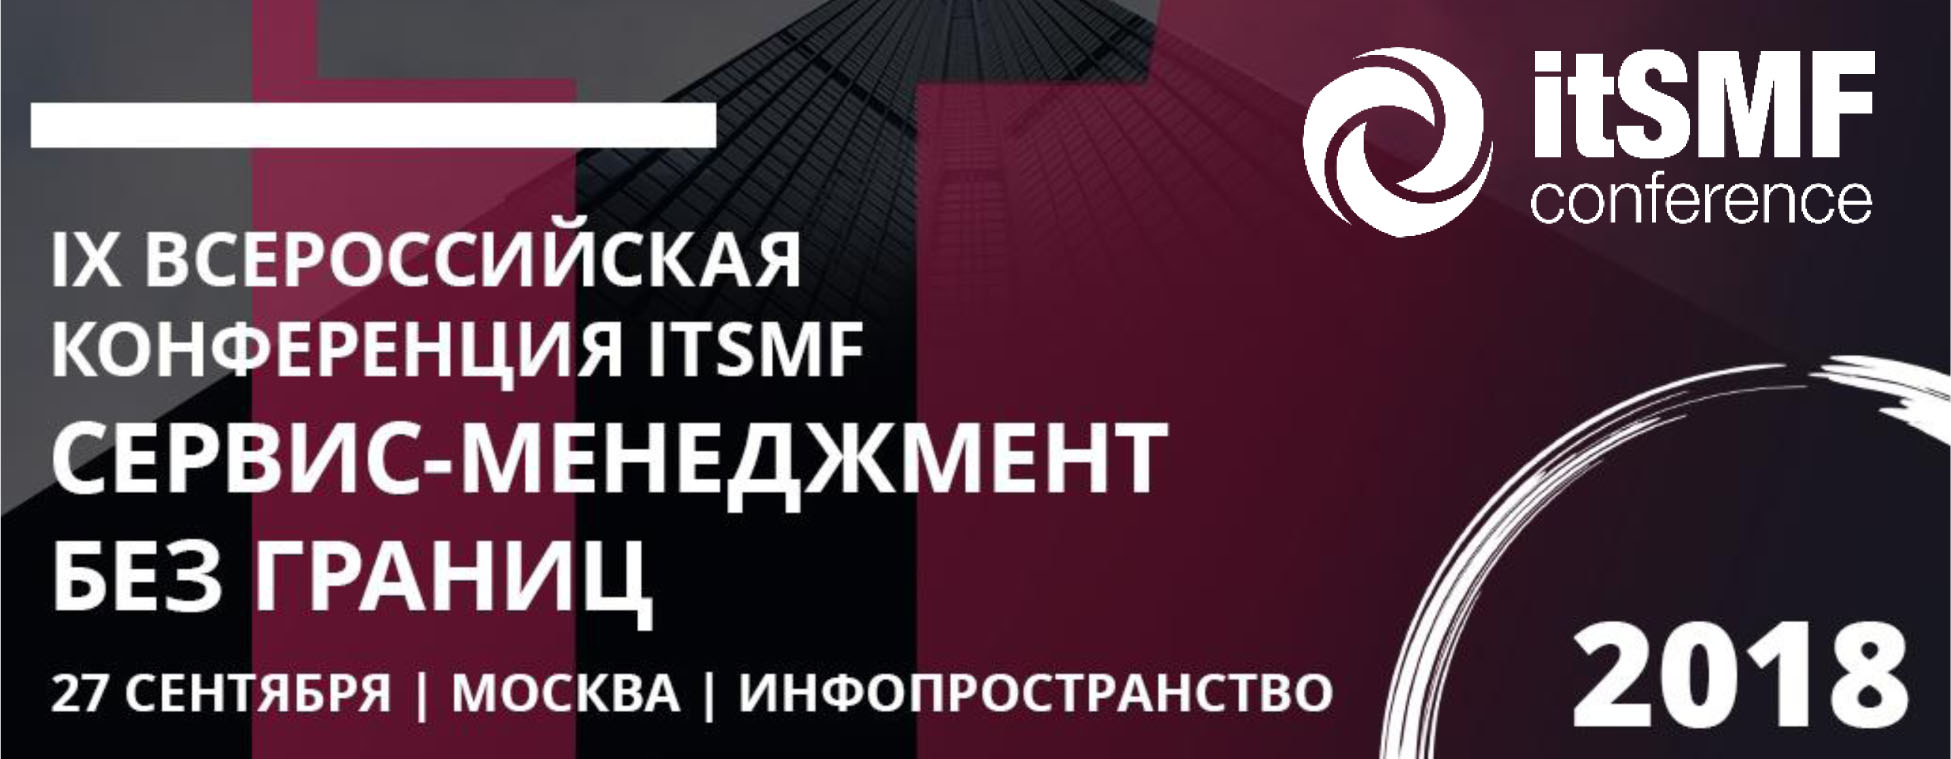 IX Всероссийская конференция itSMF 